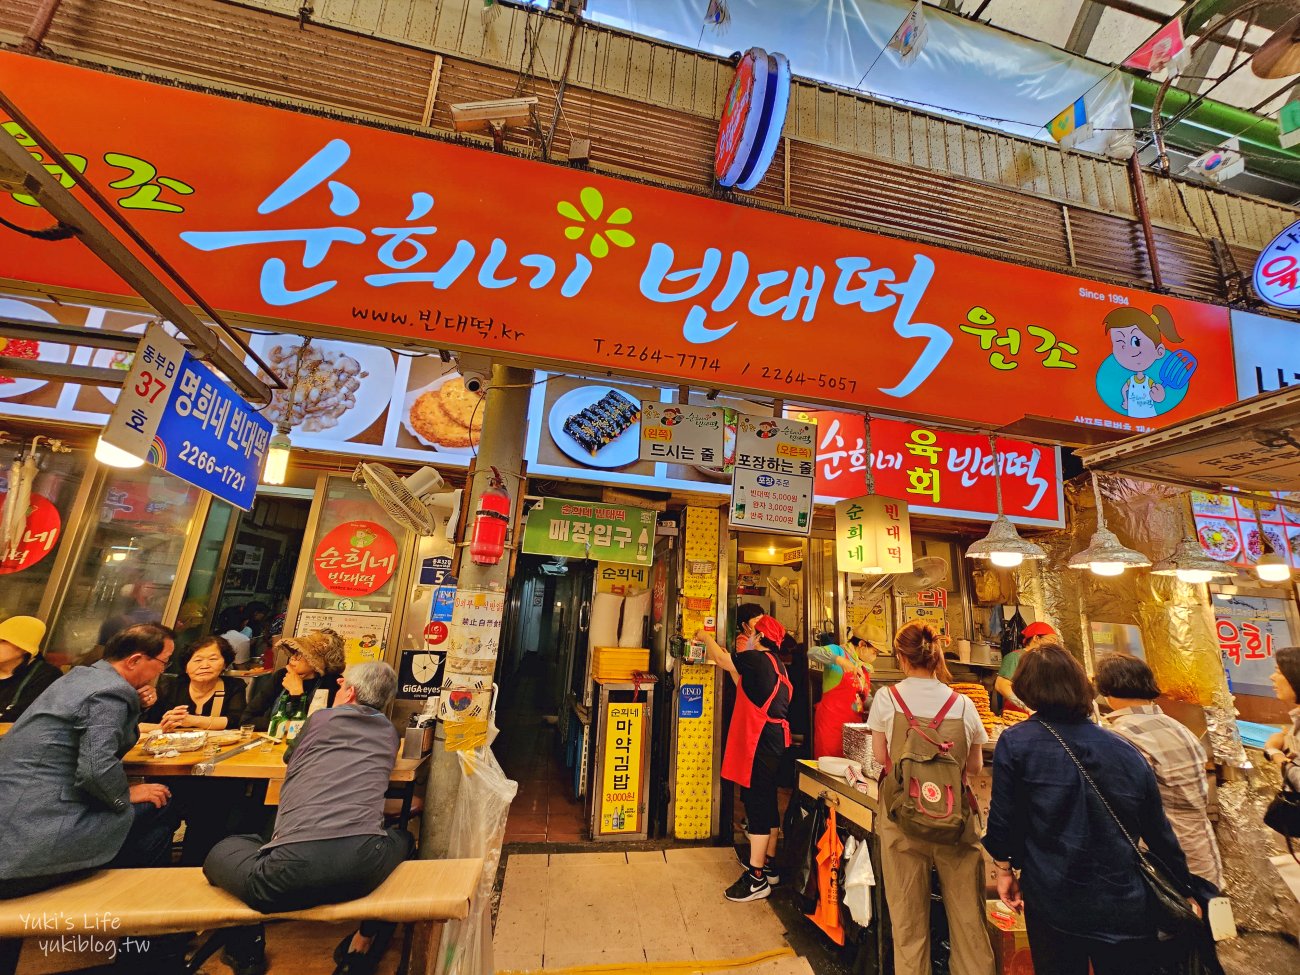 韓國┃首爾自由行，必玩景點及必吃美食，最強攻略清單(交通&營業資訊) - yukiblog.tw